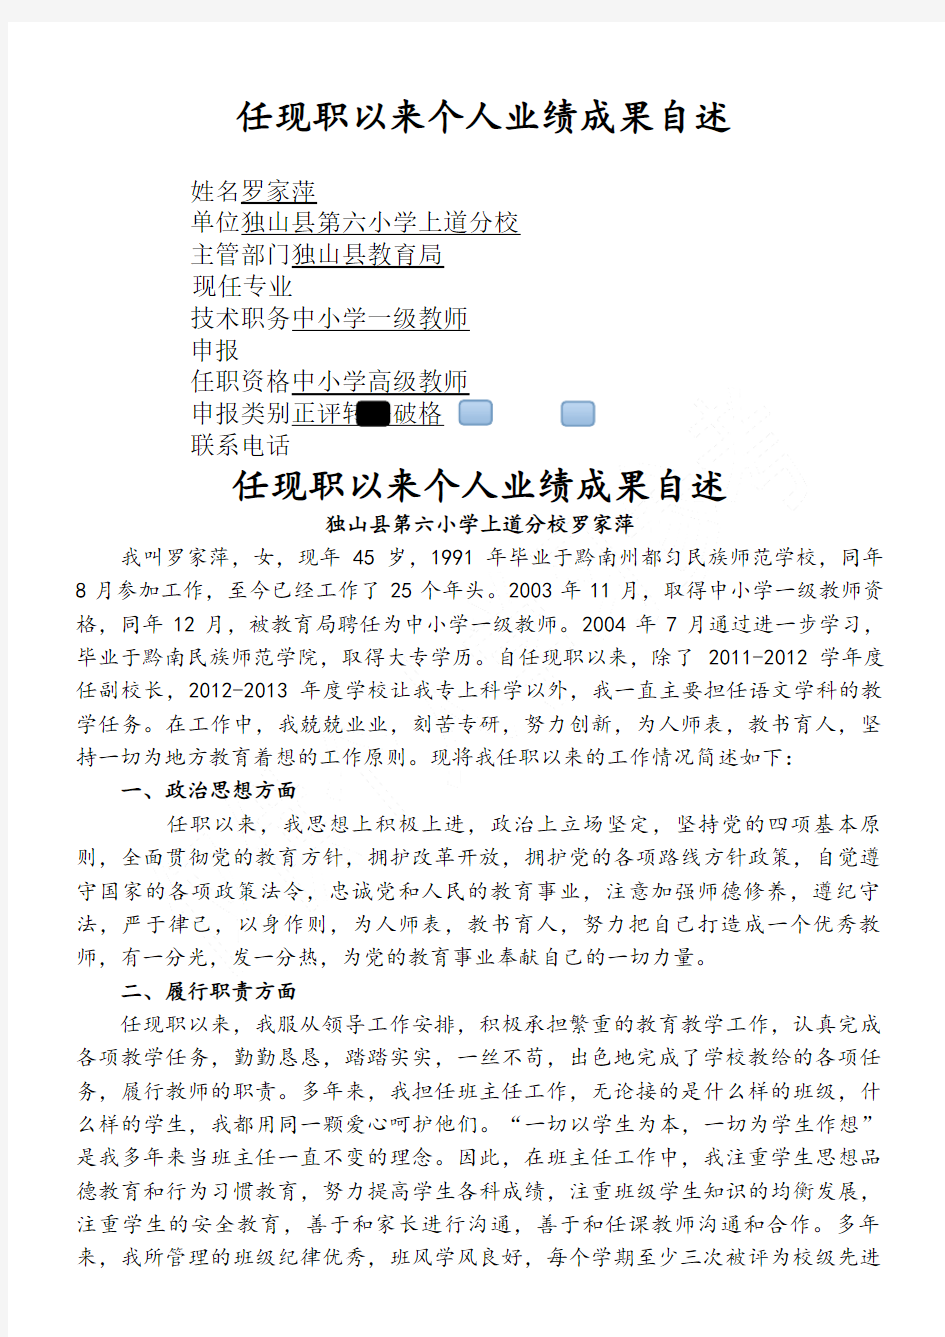 罗家萍副高级职称评定个人业绩成果自述 (2)